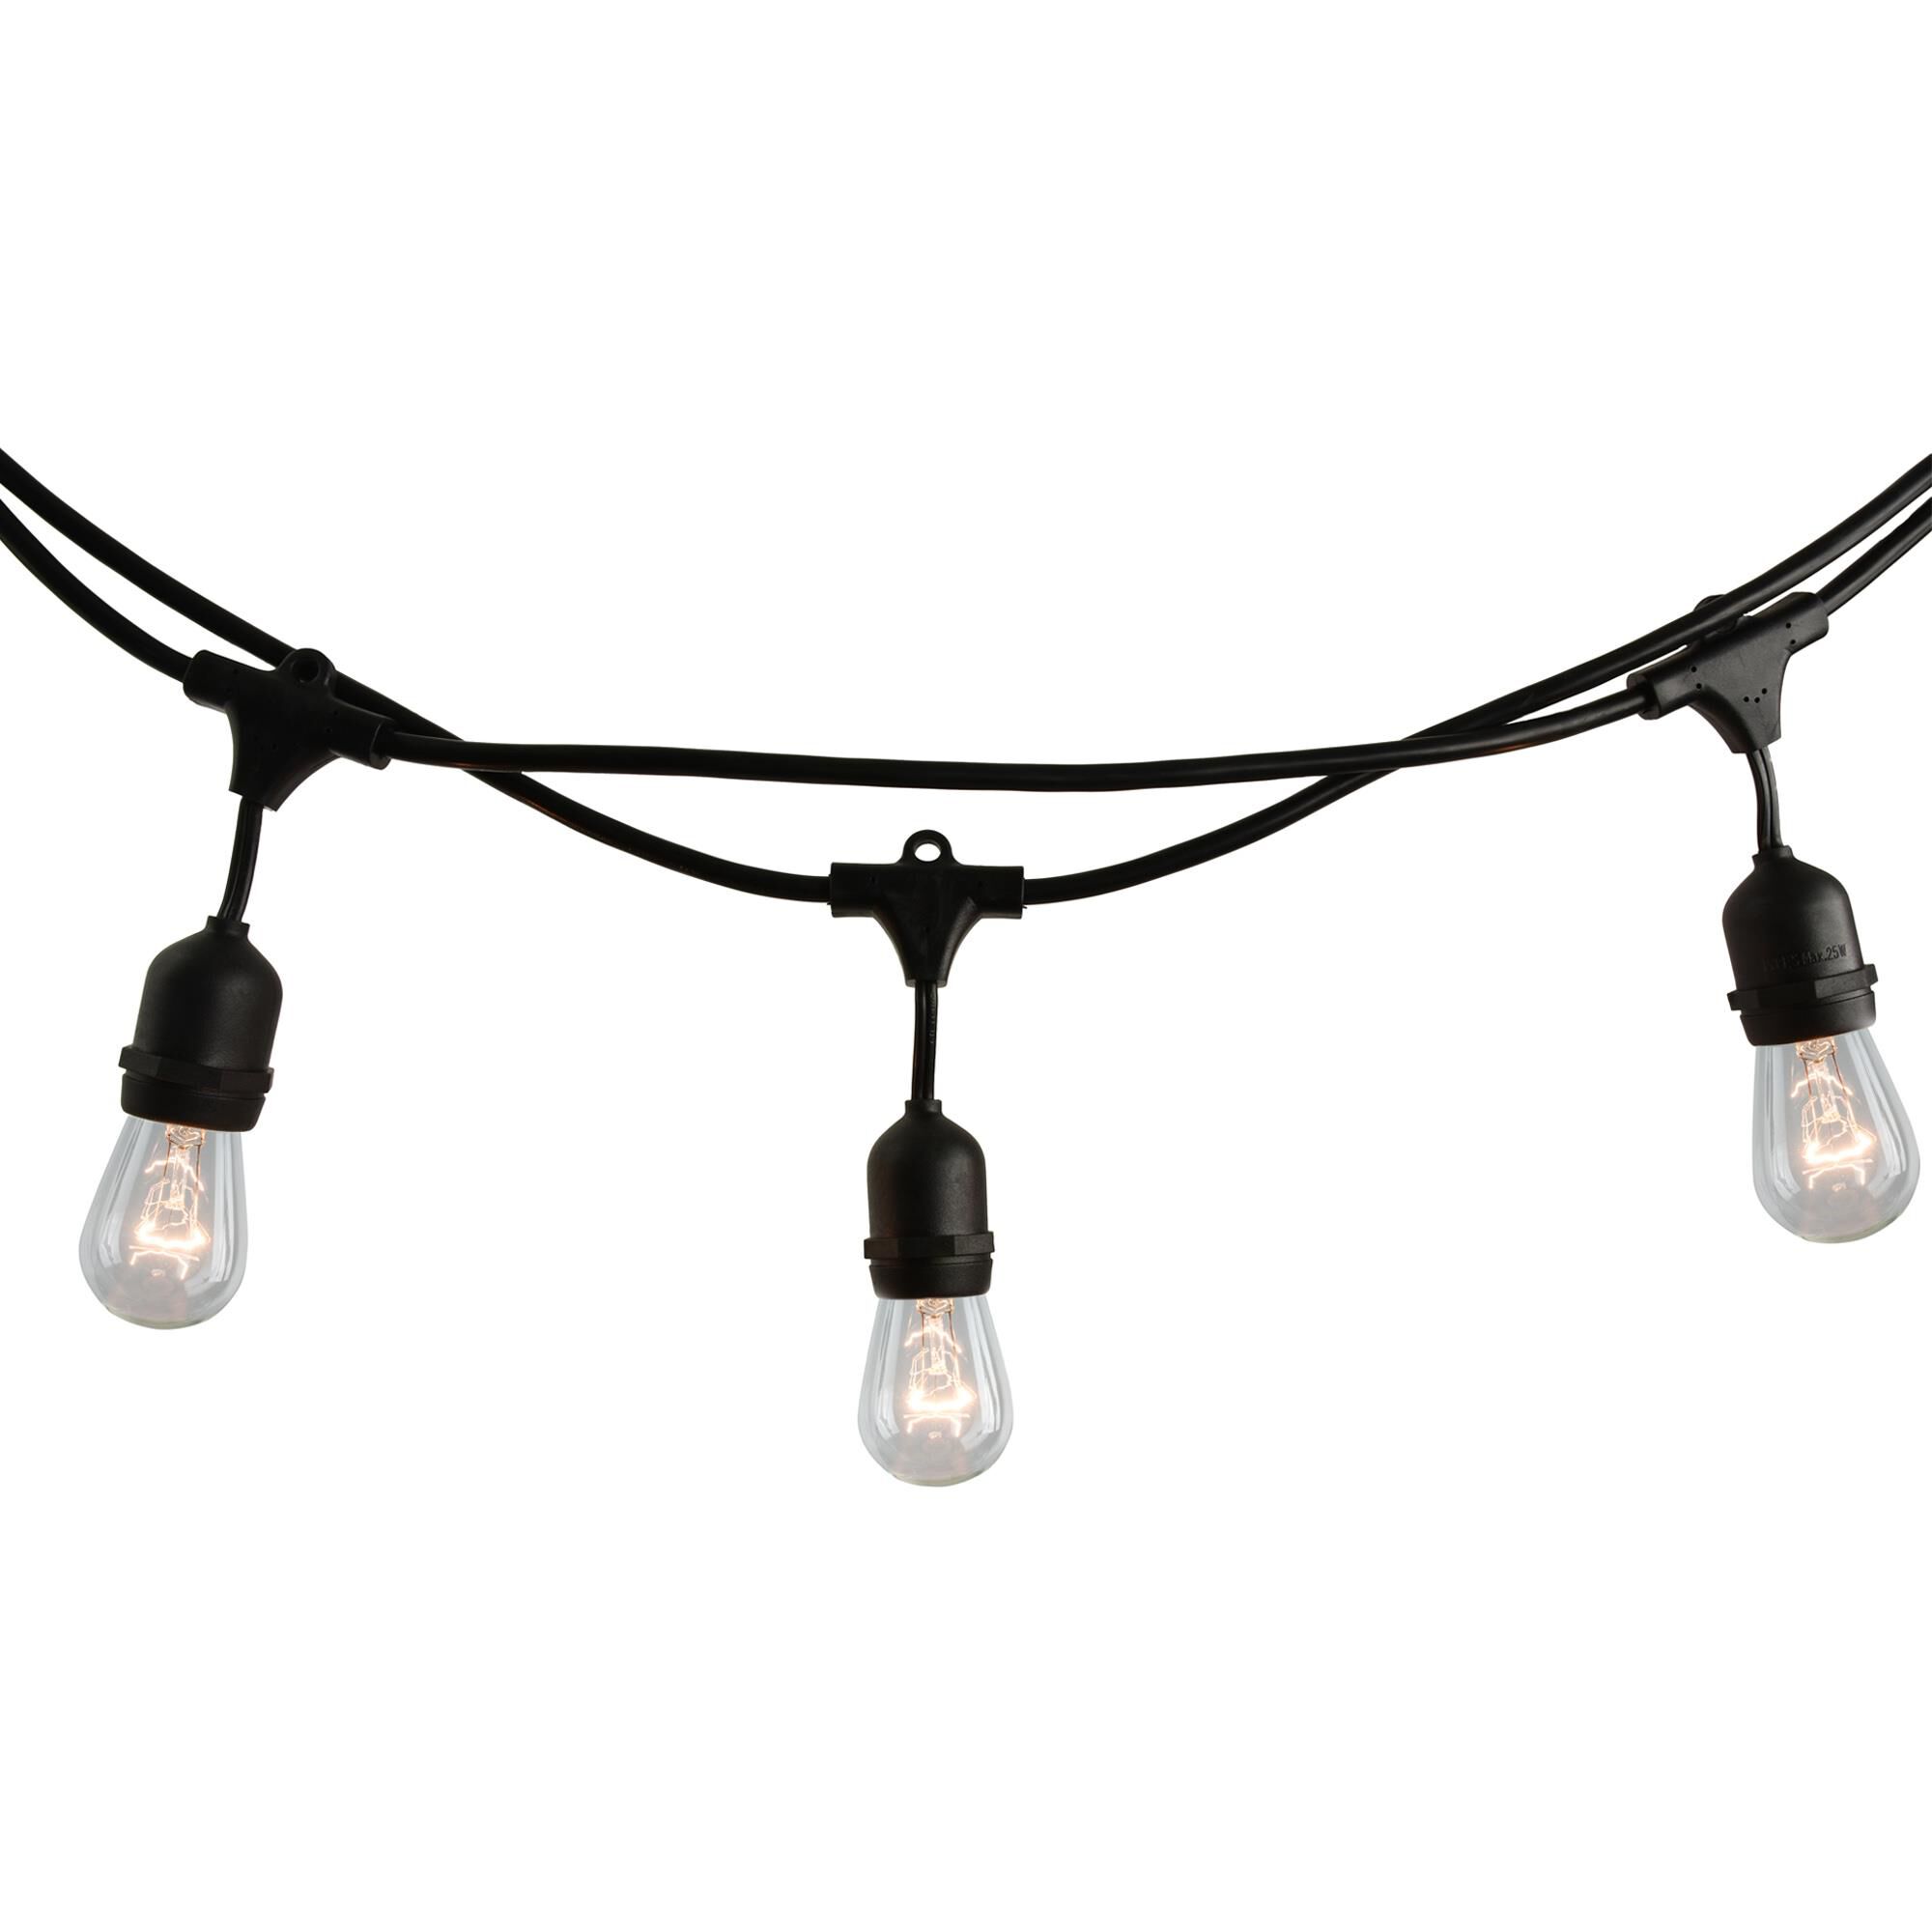 Photos - Floodlight / Garden Lamps Bulbrite 0 Watt String Light - STRING15/E26-S14KT-2PK - Modern Contemporar